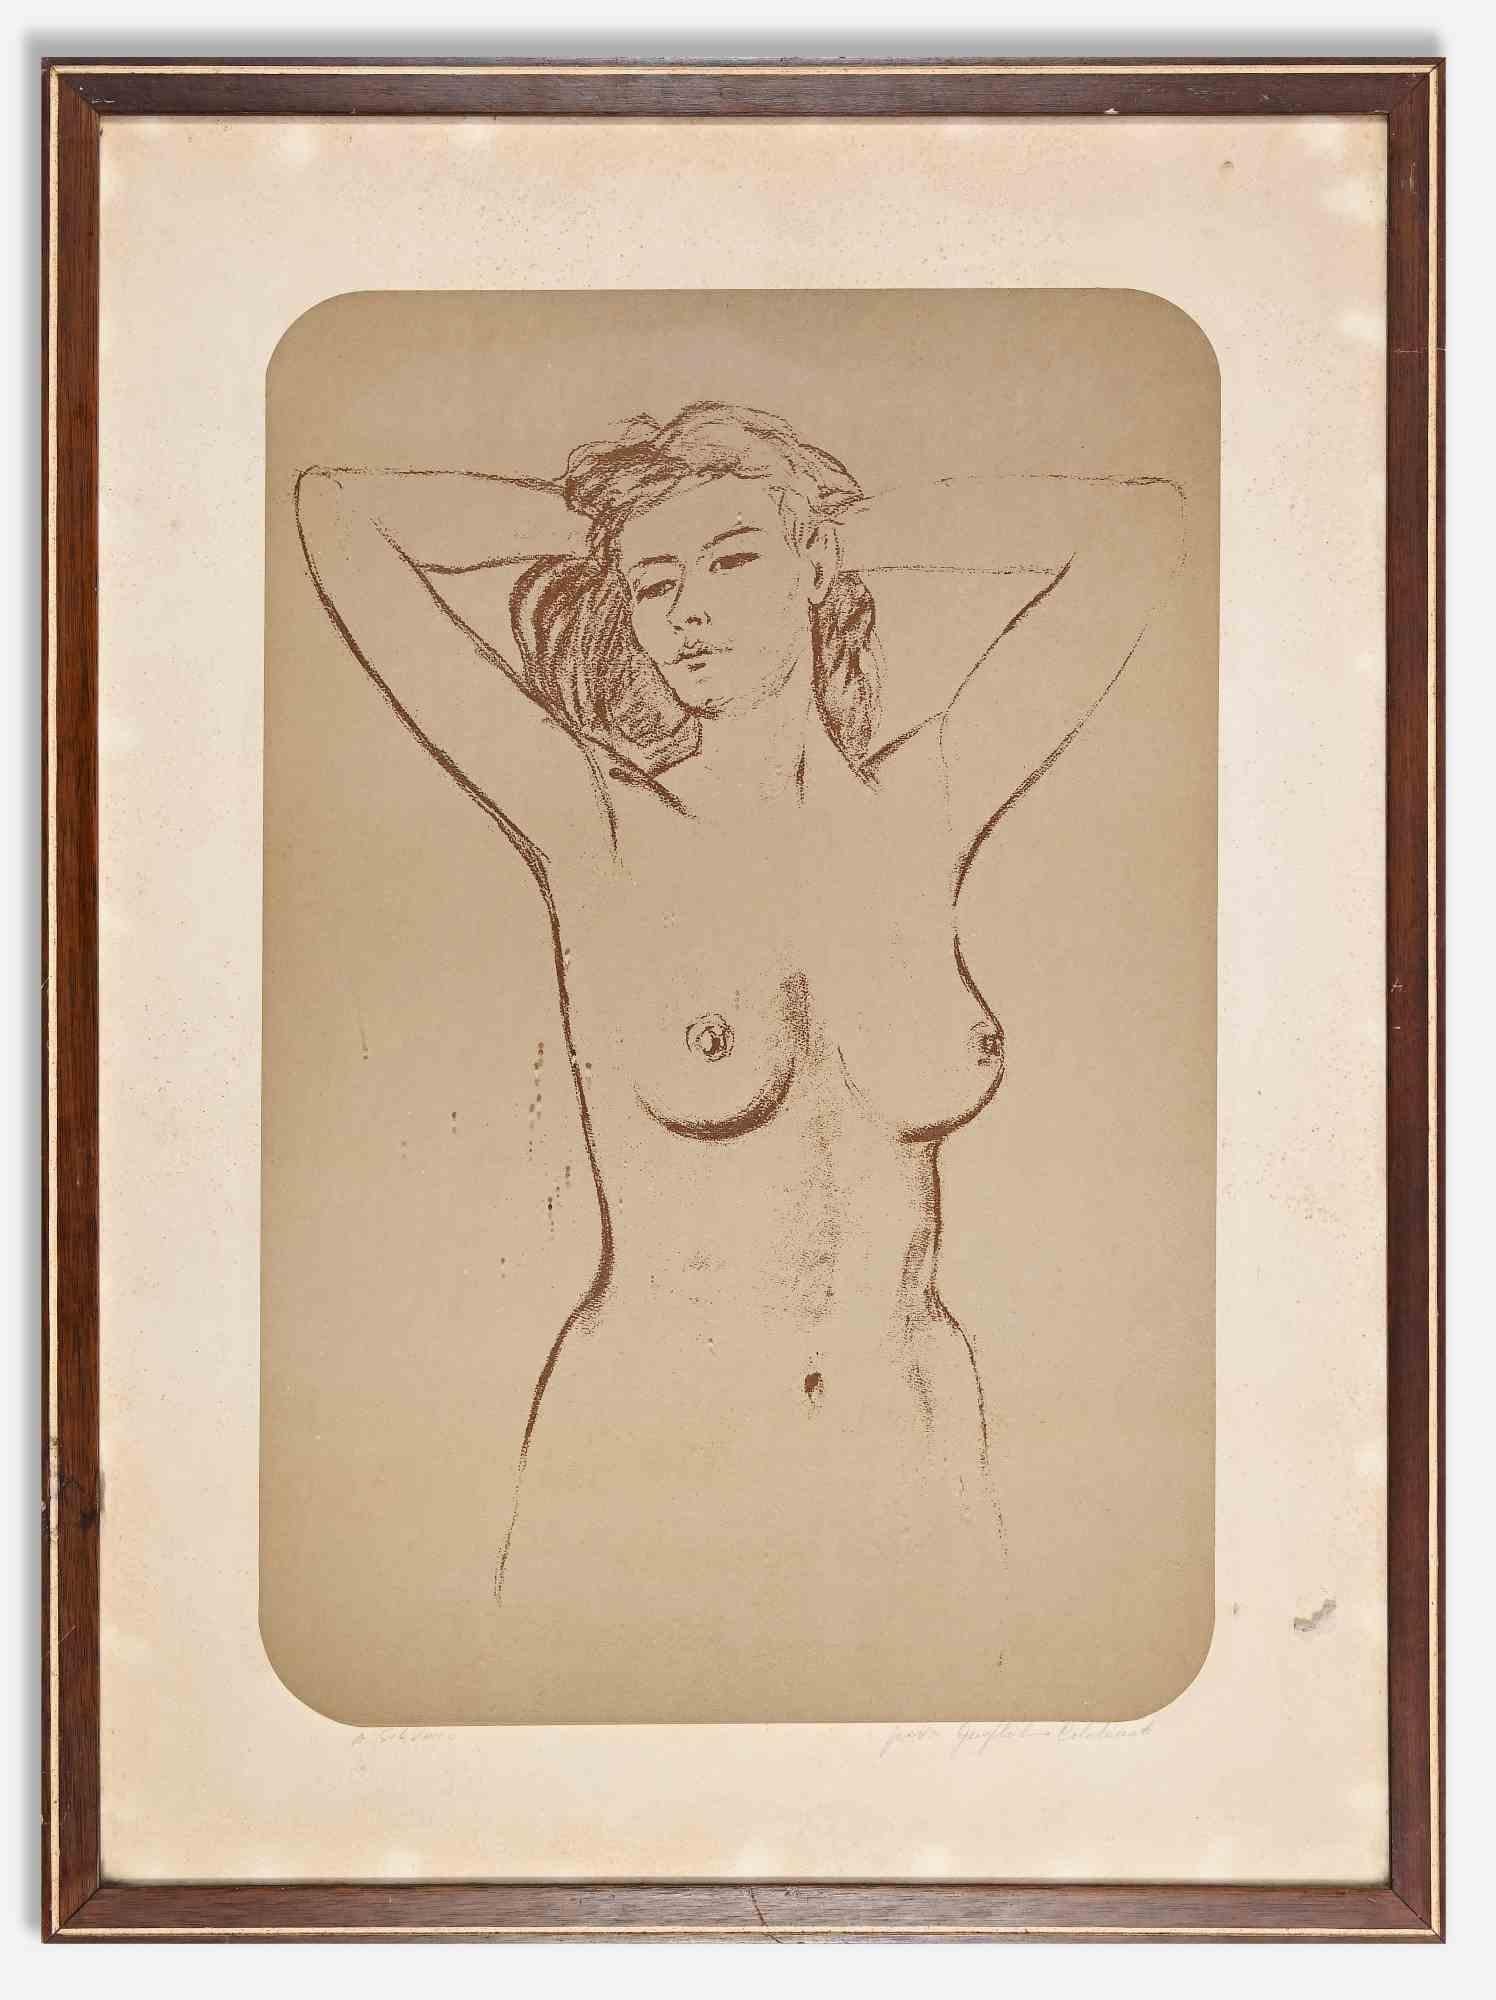 Femme nue est une œuvre d'art moderne originale réalisée au milieu du 20e siècle par l'artiste Guglielmo Coladonato.

Lithographie sur papier. 

Signature et dédicace manuscrite dans la marge inférieure.

Conditions passables (quelques rousseurs et